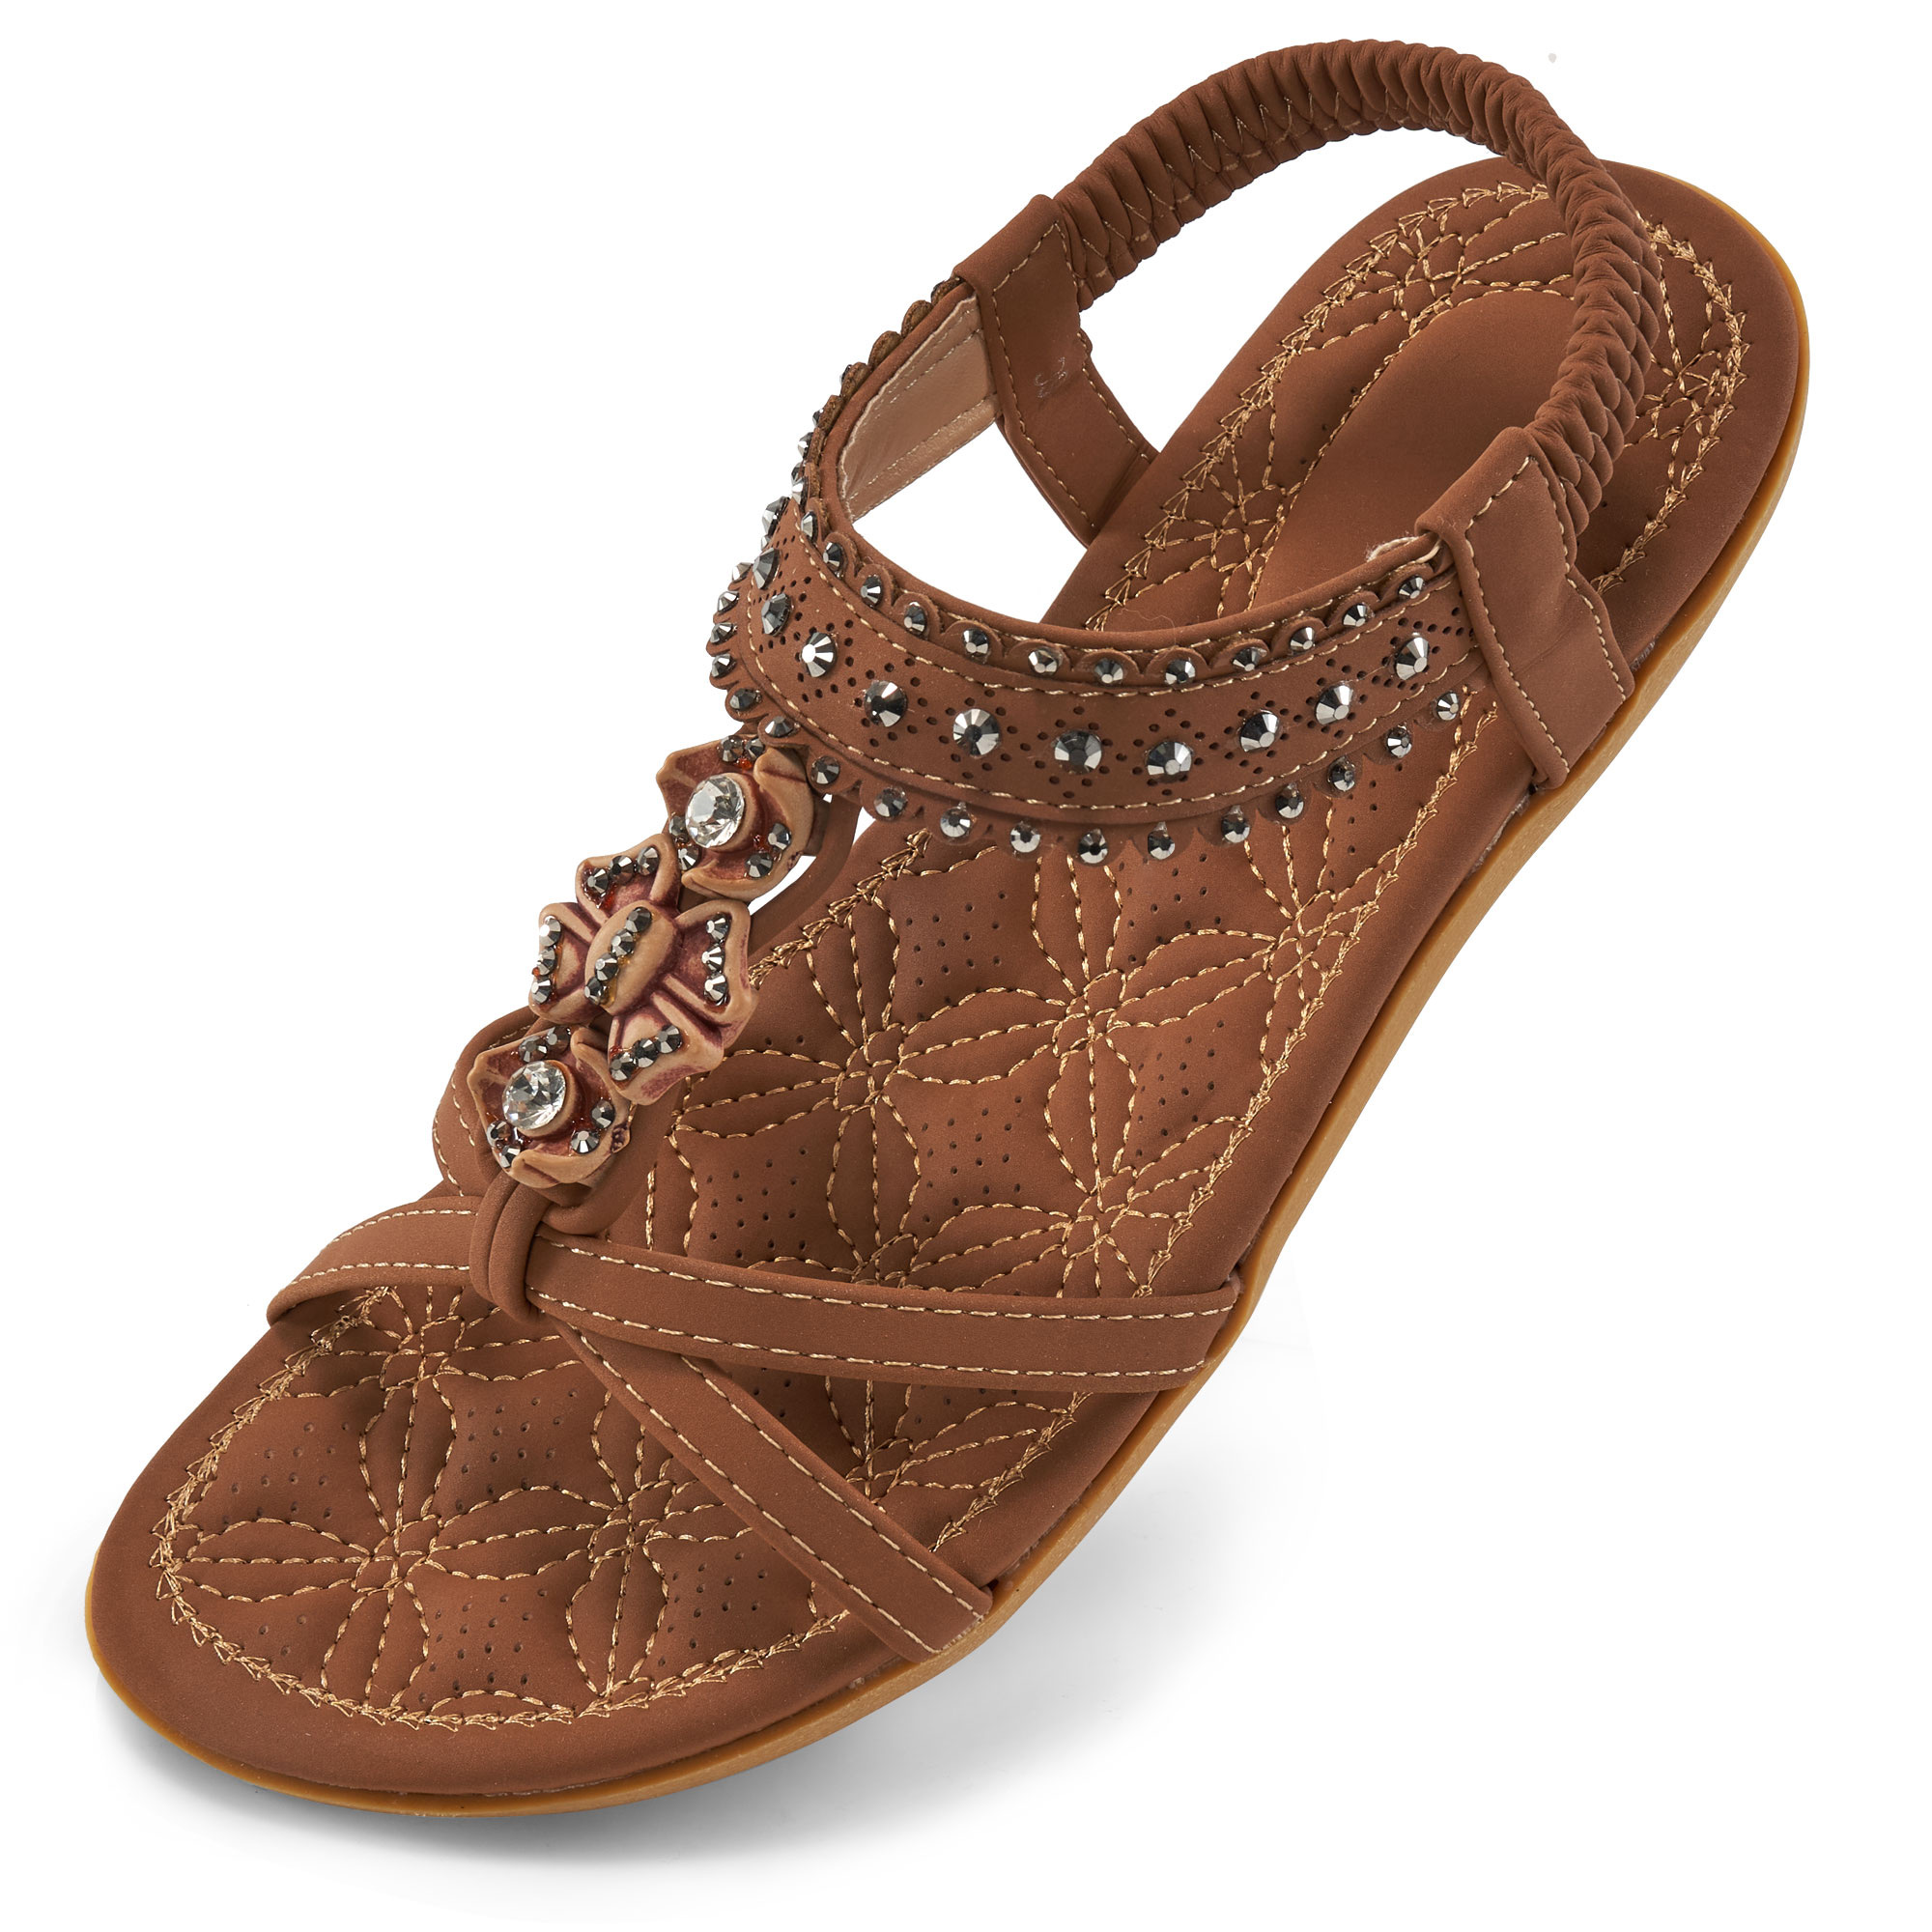 Jtckarpu Women's Sandals Sandals Women Comfortable Casual Beach Shoes ...